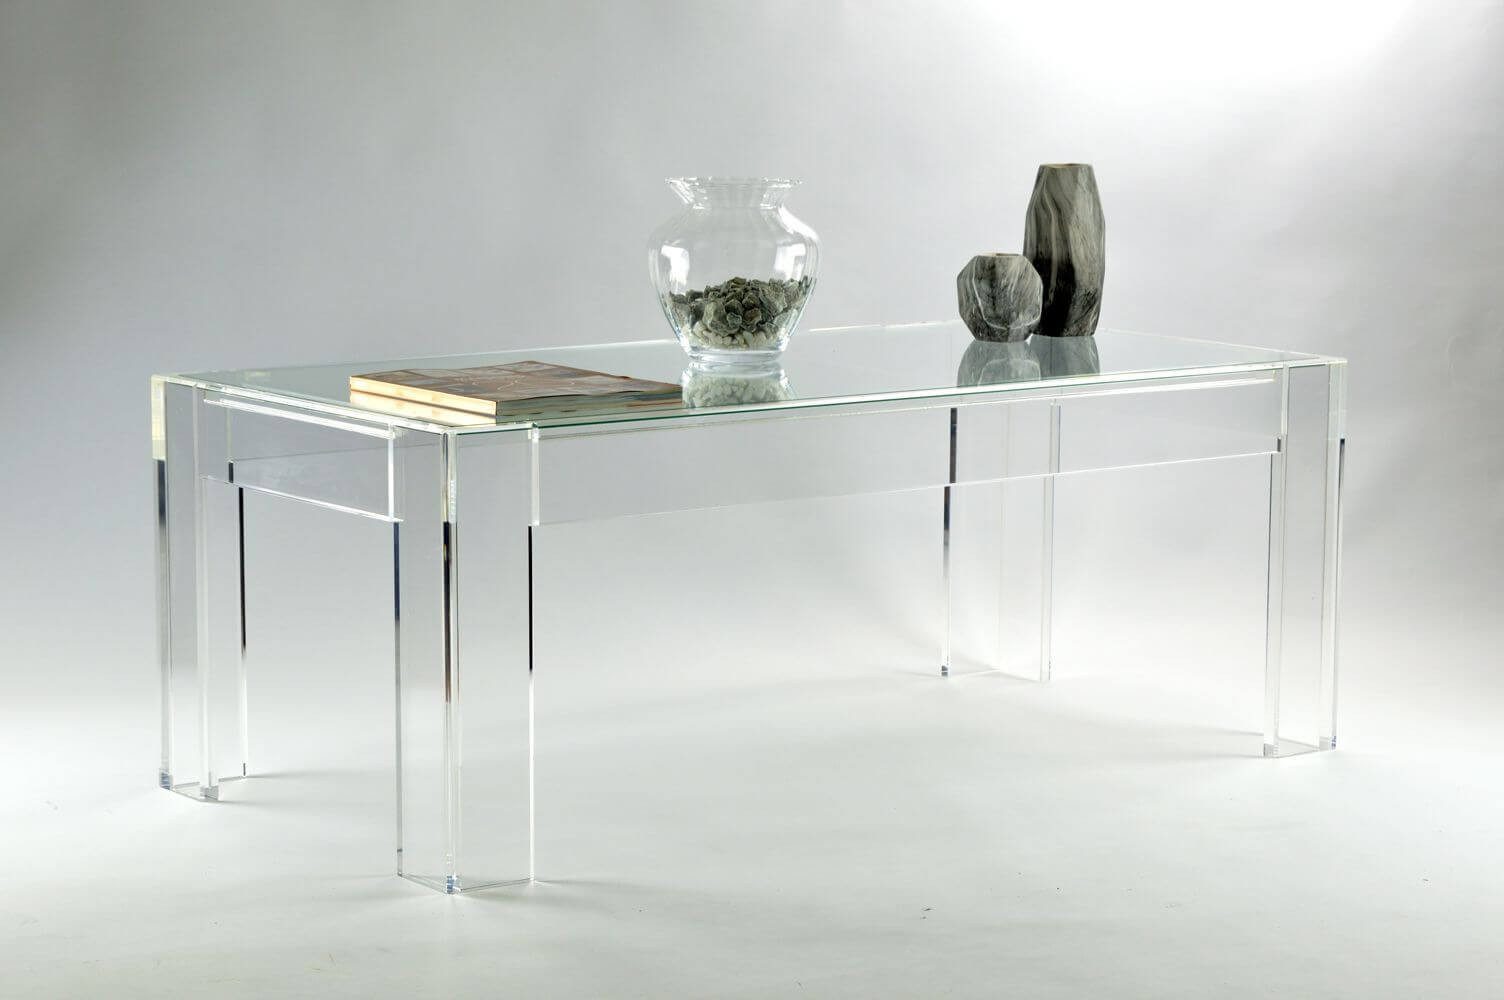 Design Objekte Beistelltisch Acryl Beistelltisch Salontisch mit Glasauflage in zwei Farben, Breite 120 cm, Breite 130 cm